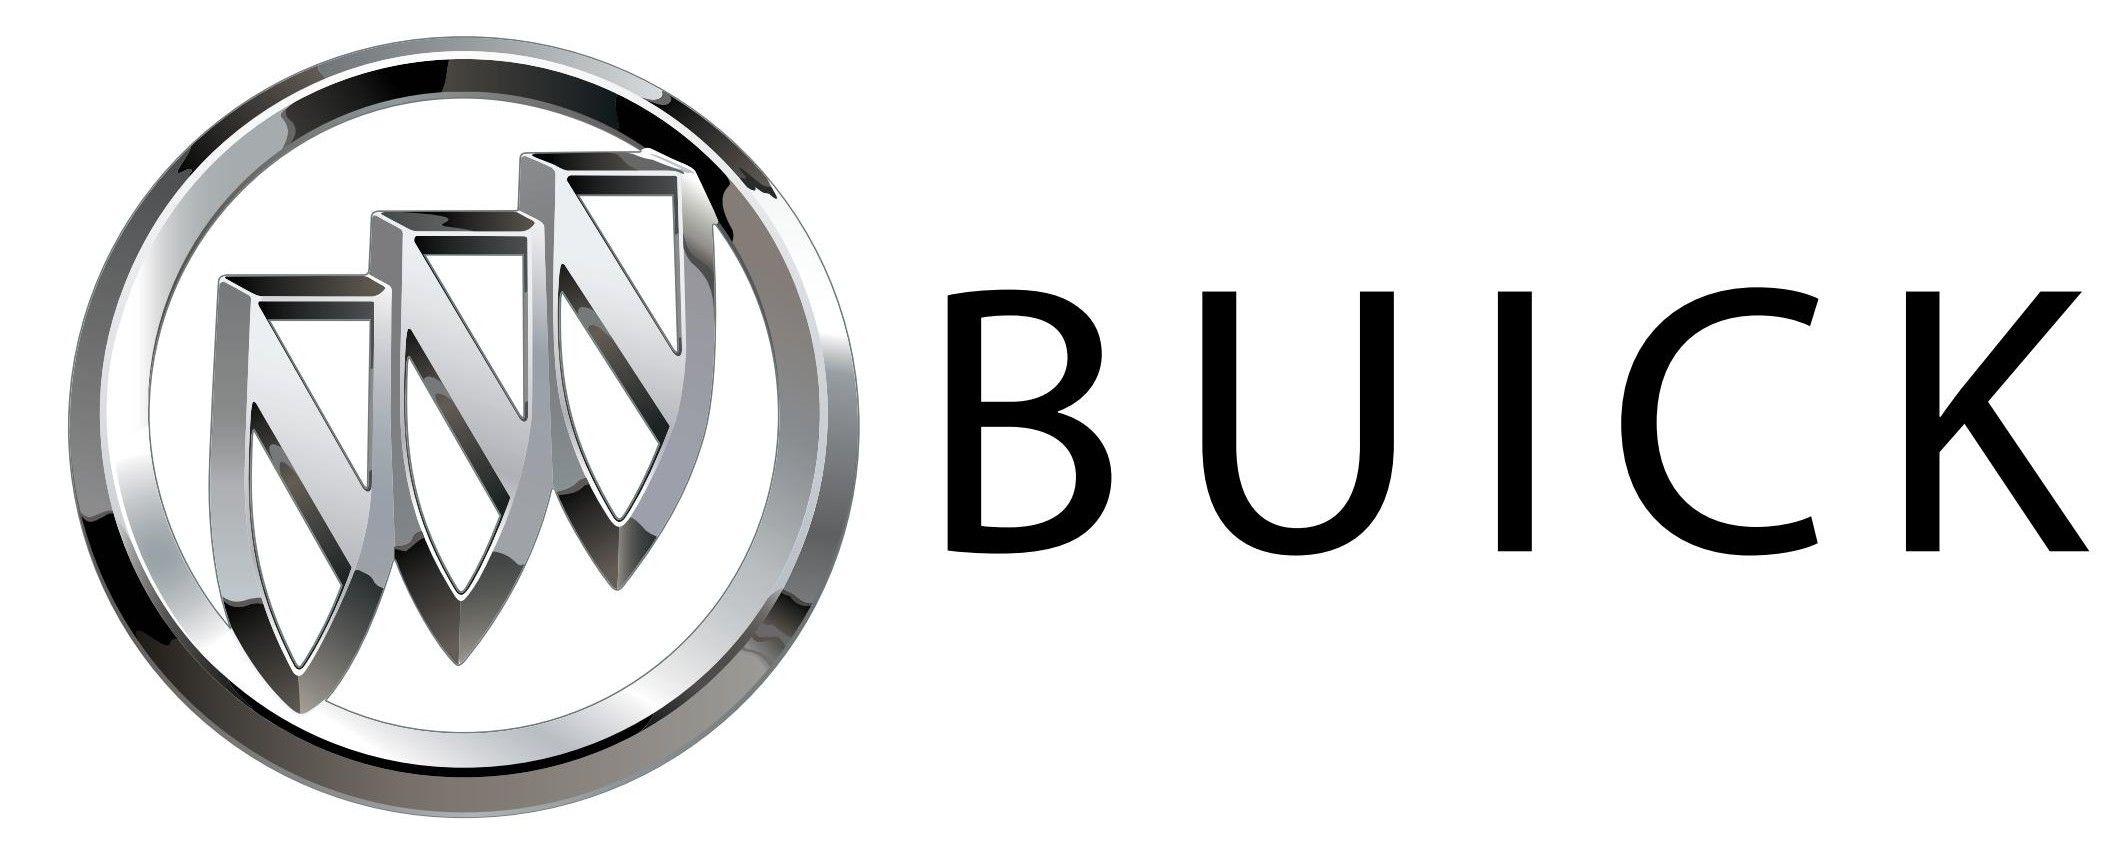 2014 Buick Logo - Buick Logos